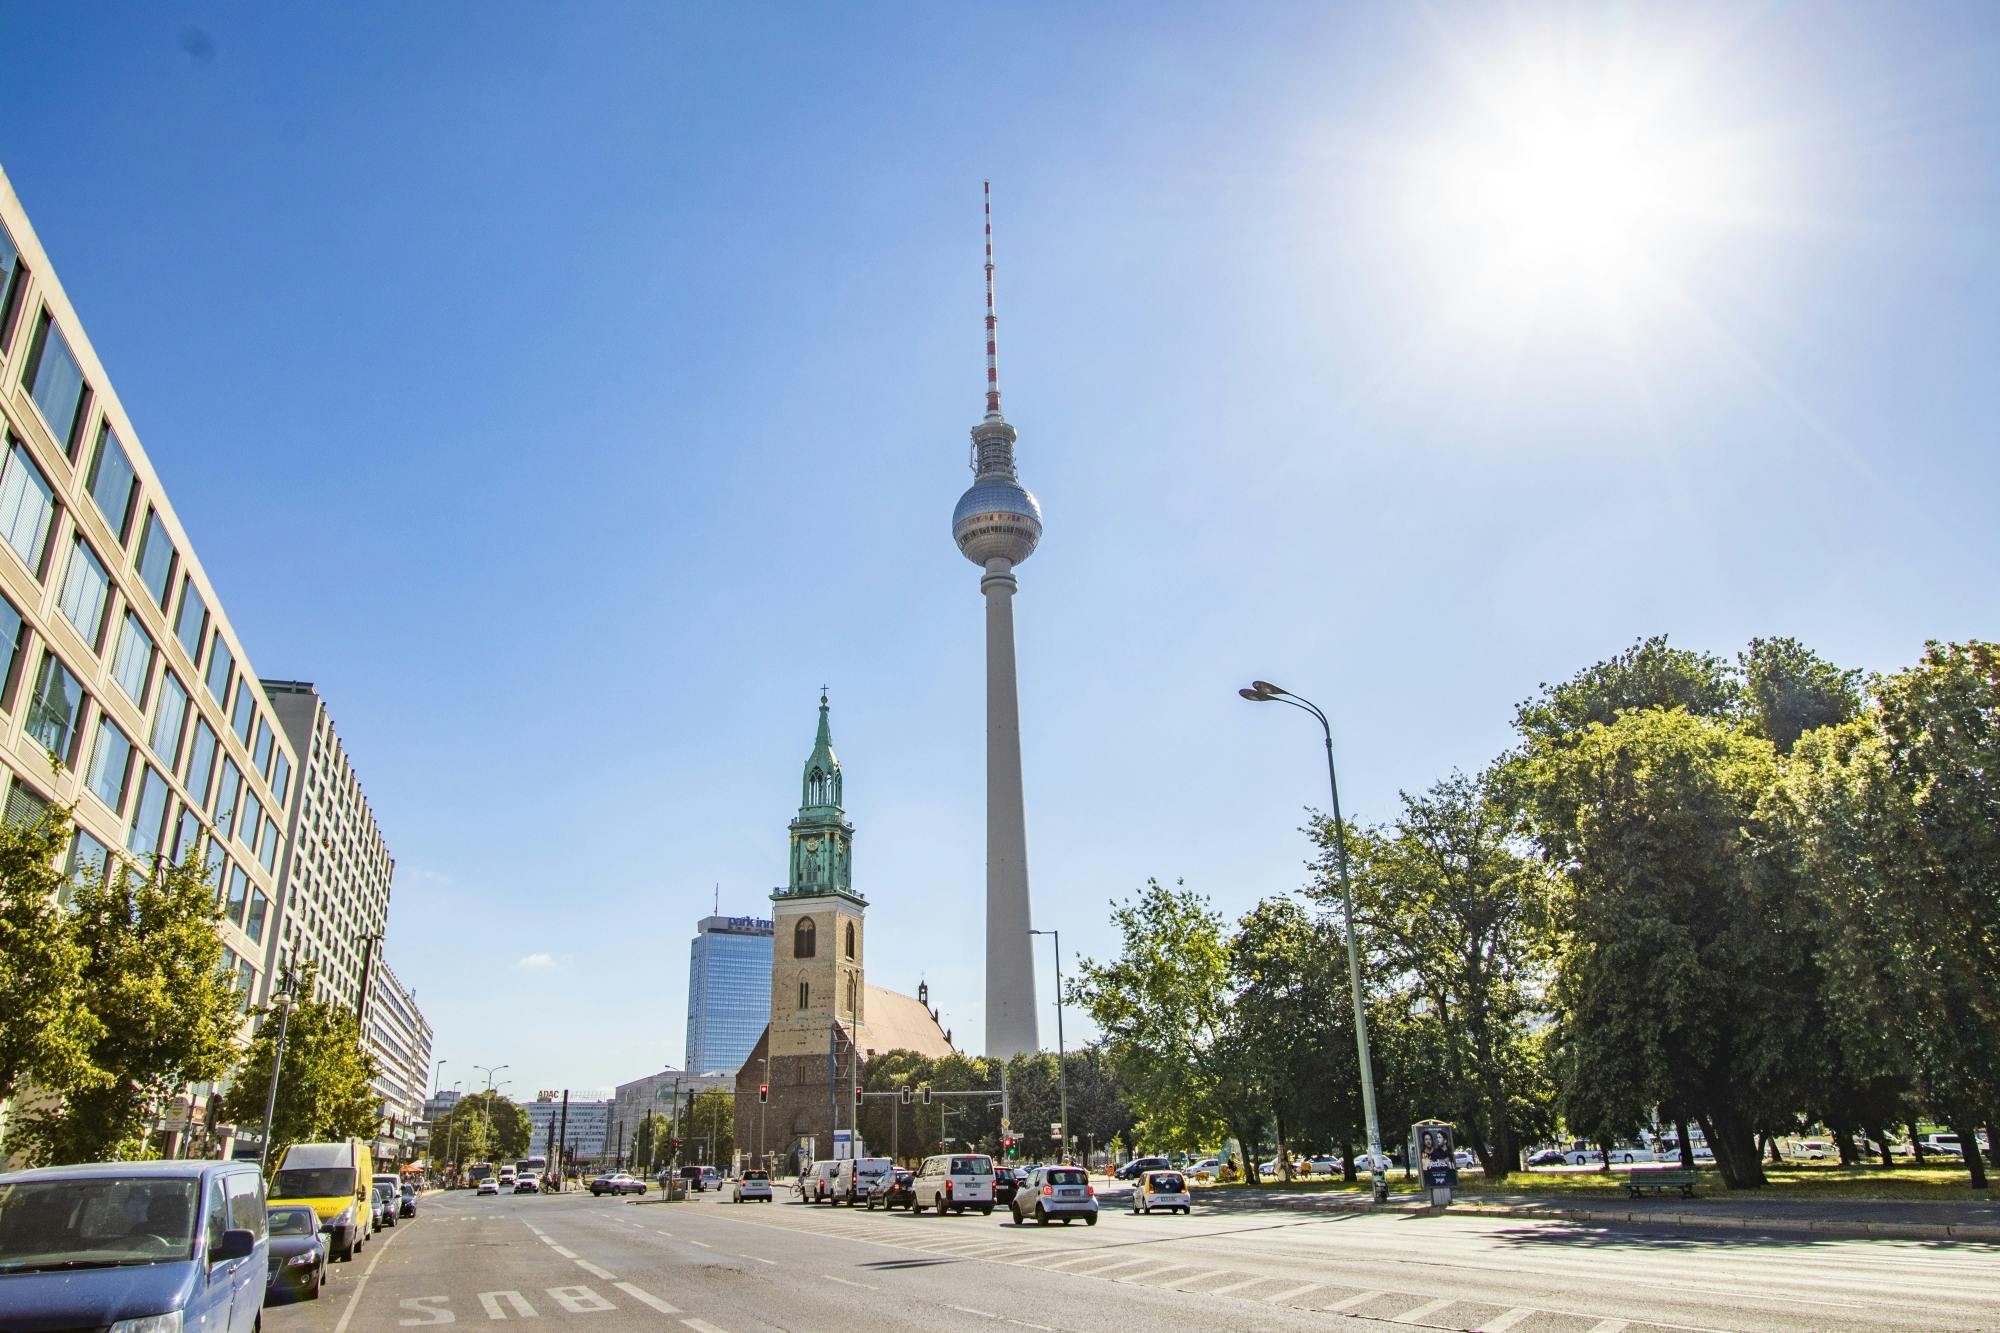 Descubra Berlim em uma visita guiada com um local